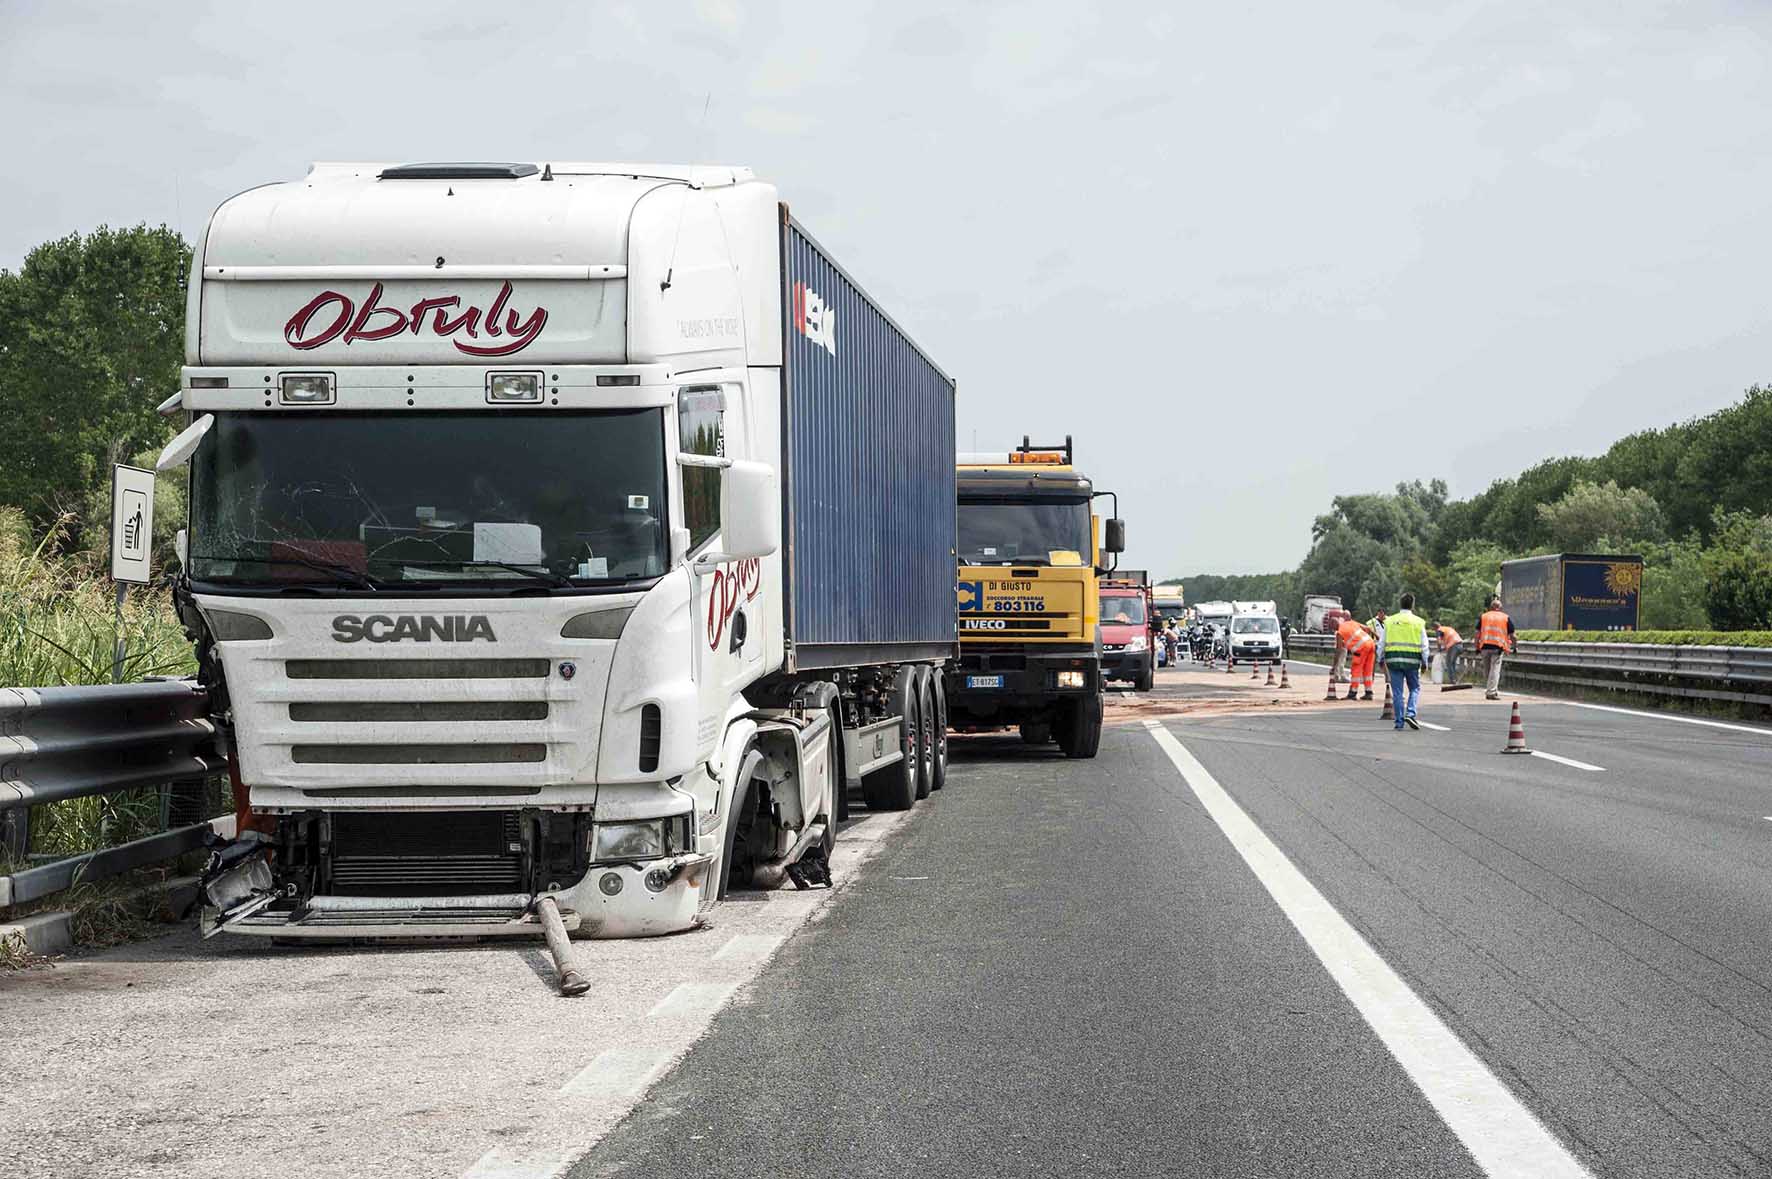 A4 Palmanova Incidente sever 8 luglio 2015 camion coinvolto